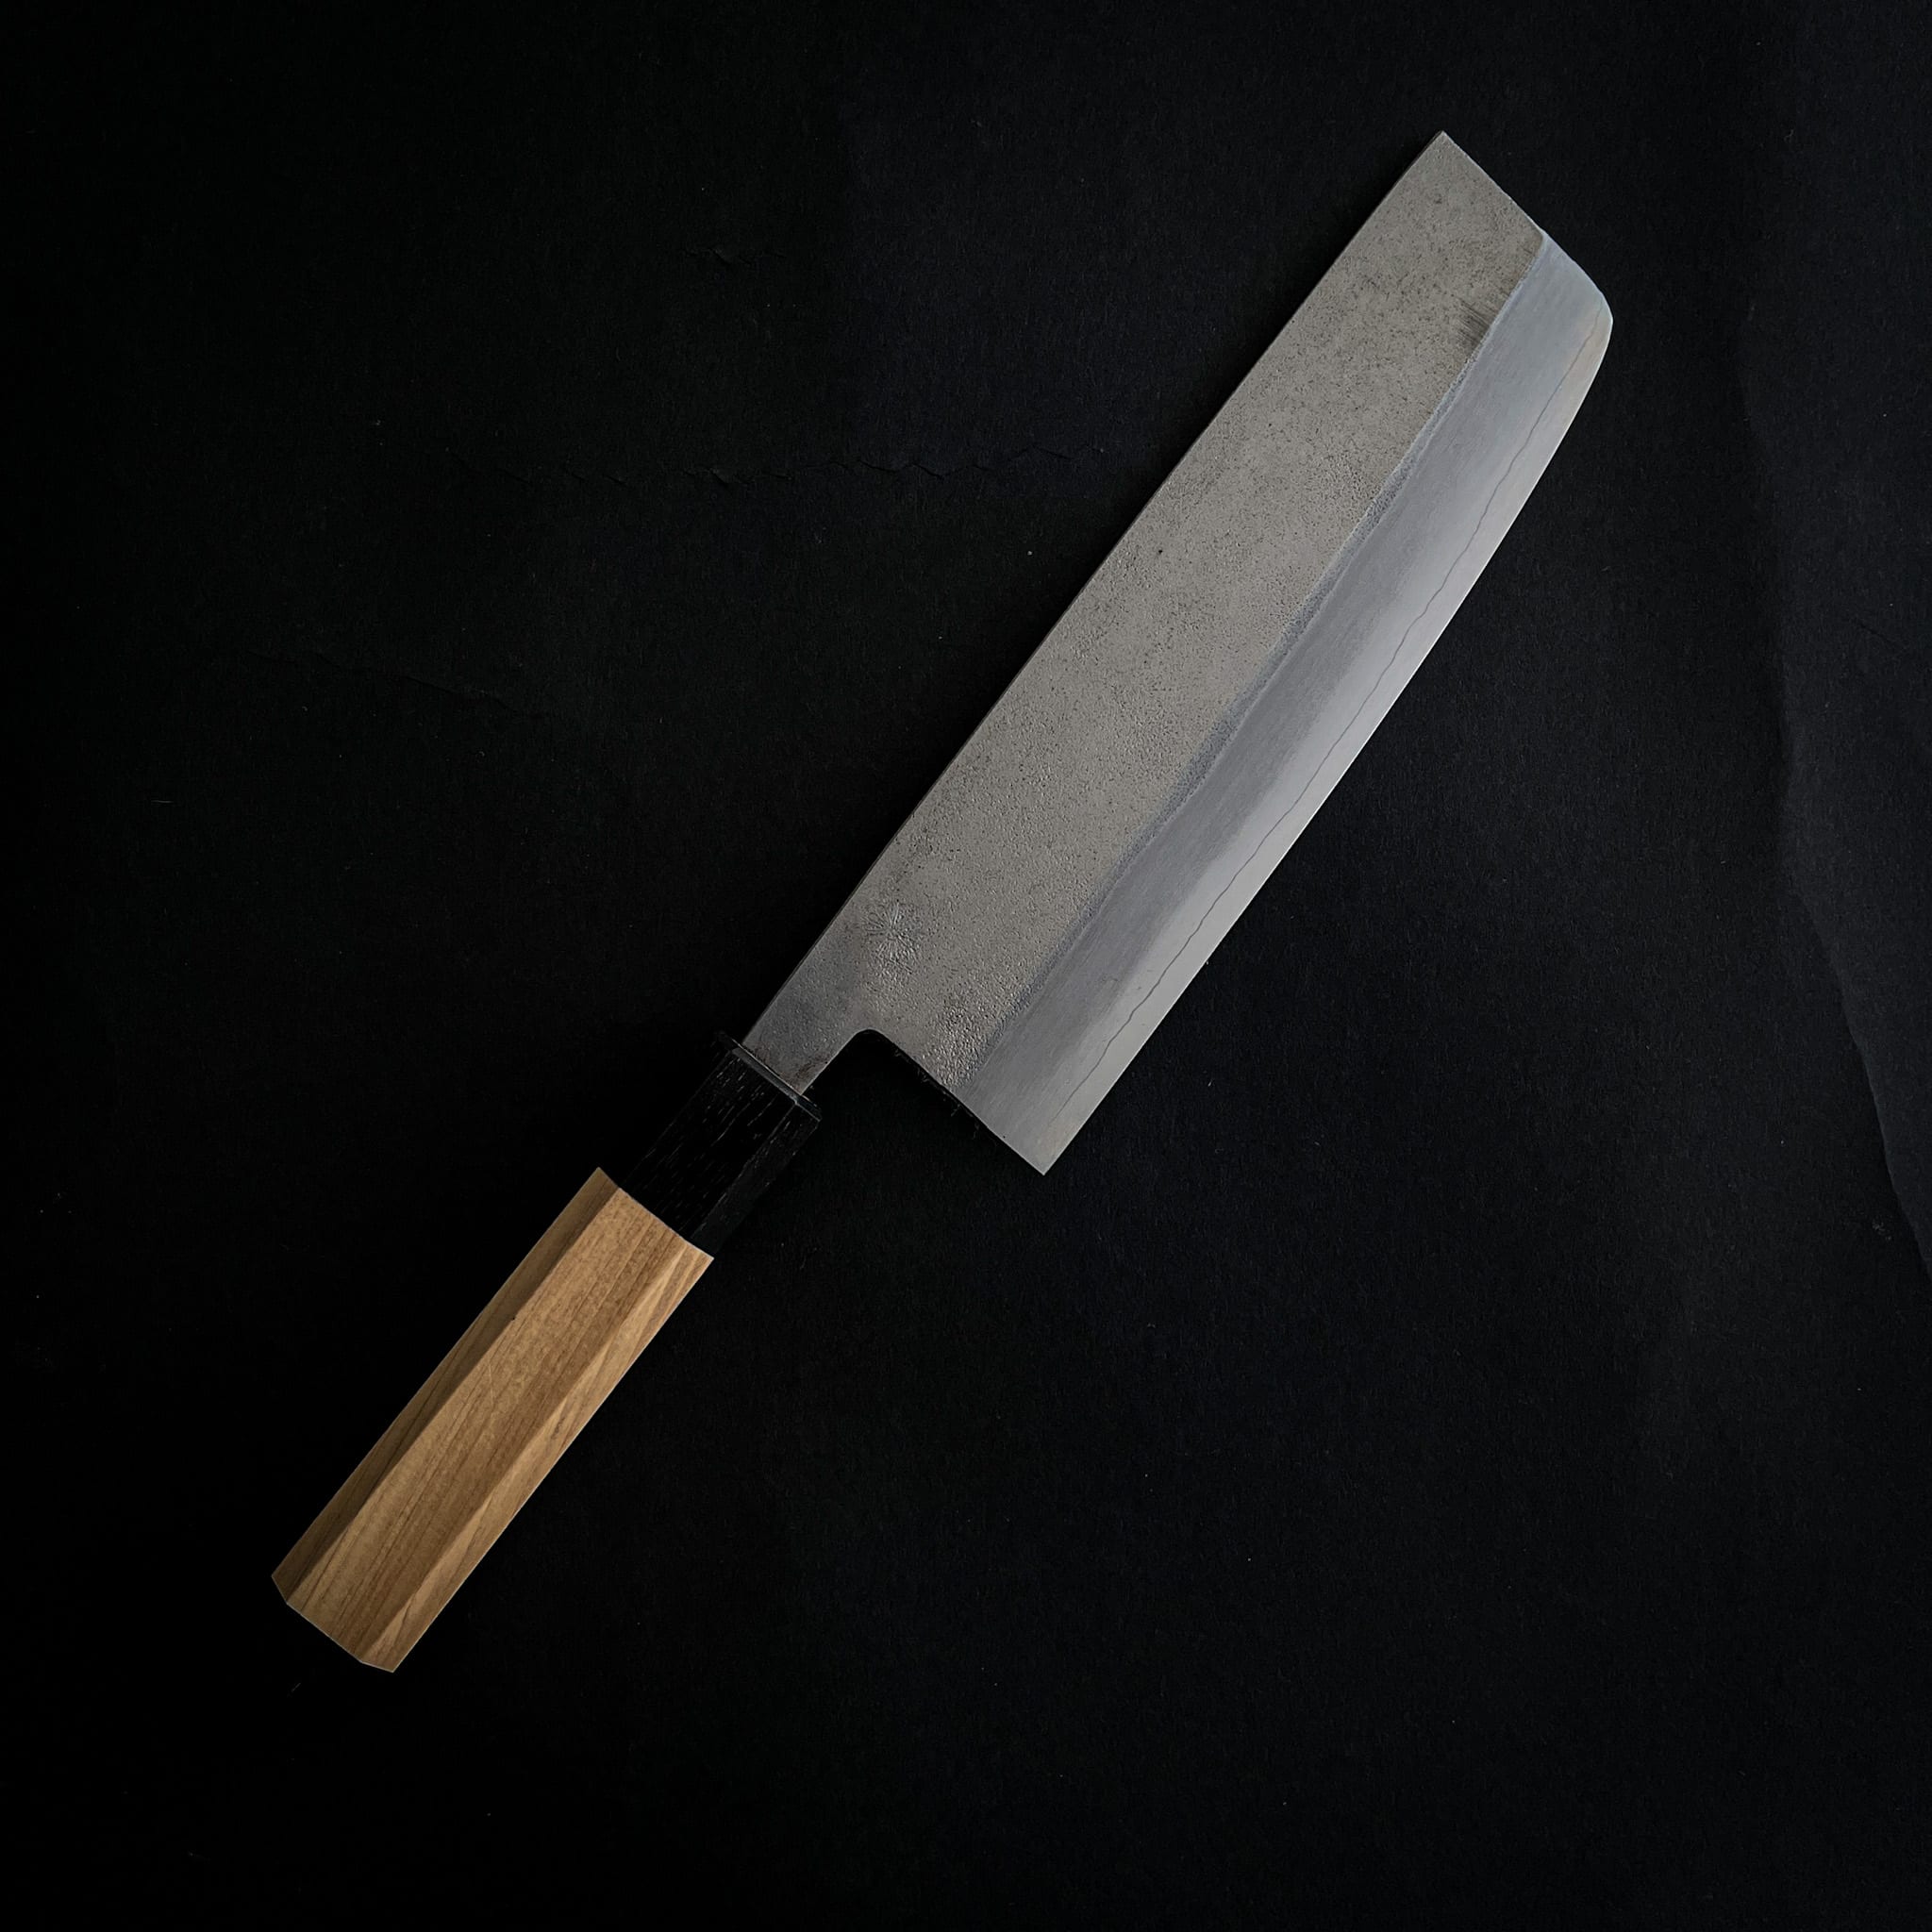 BLACK GHOST kurouchi knife Nakiri